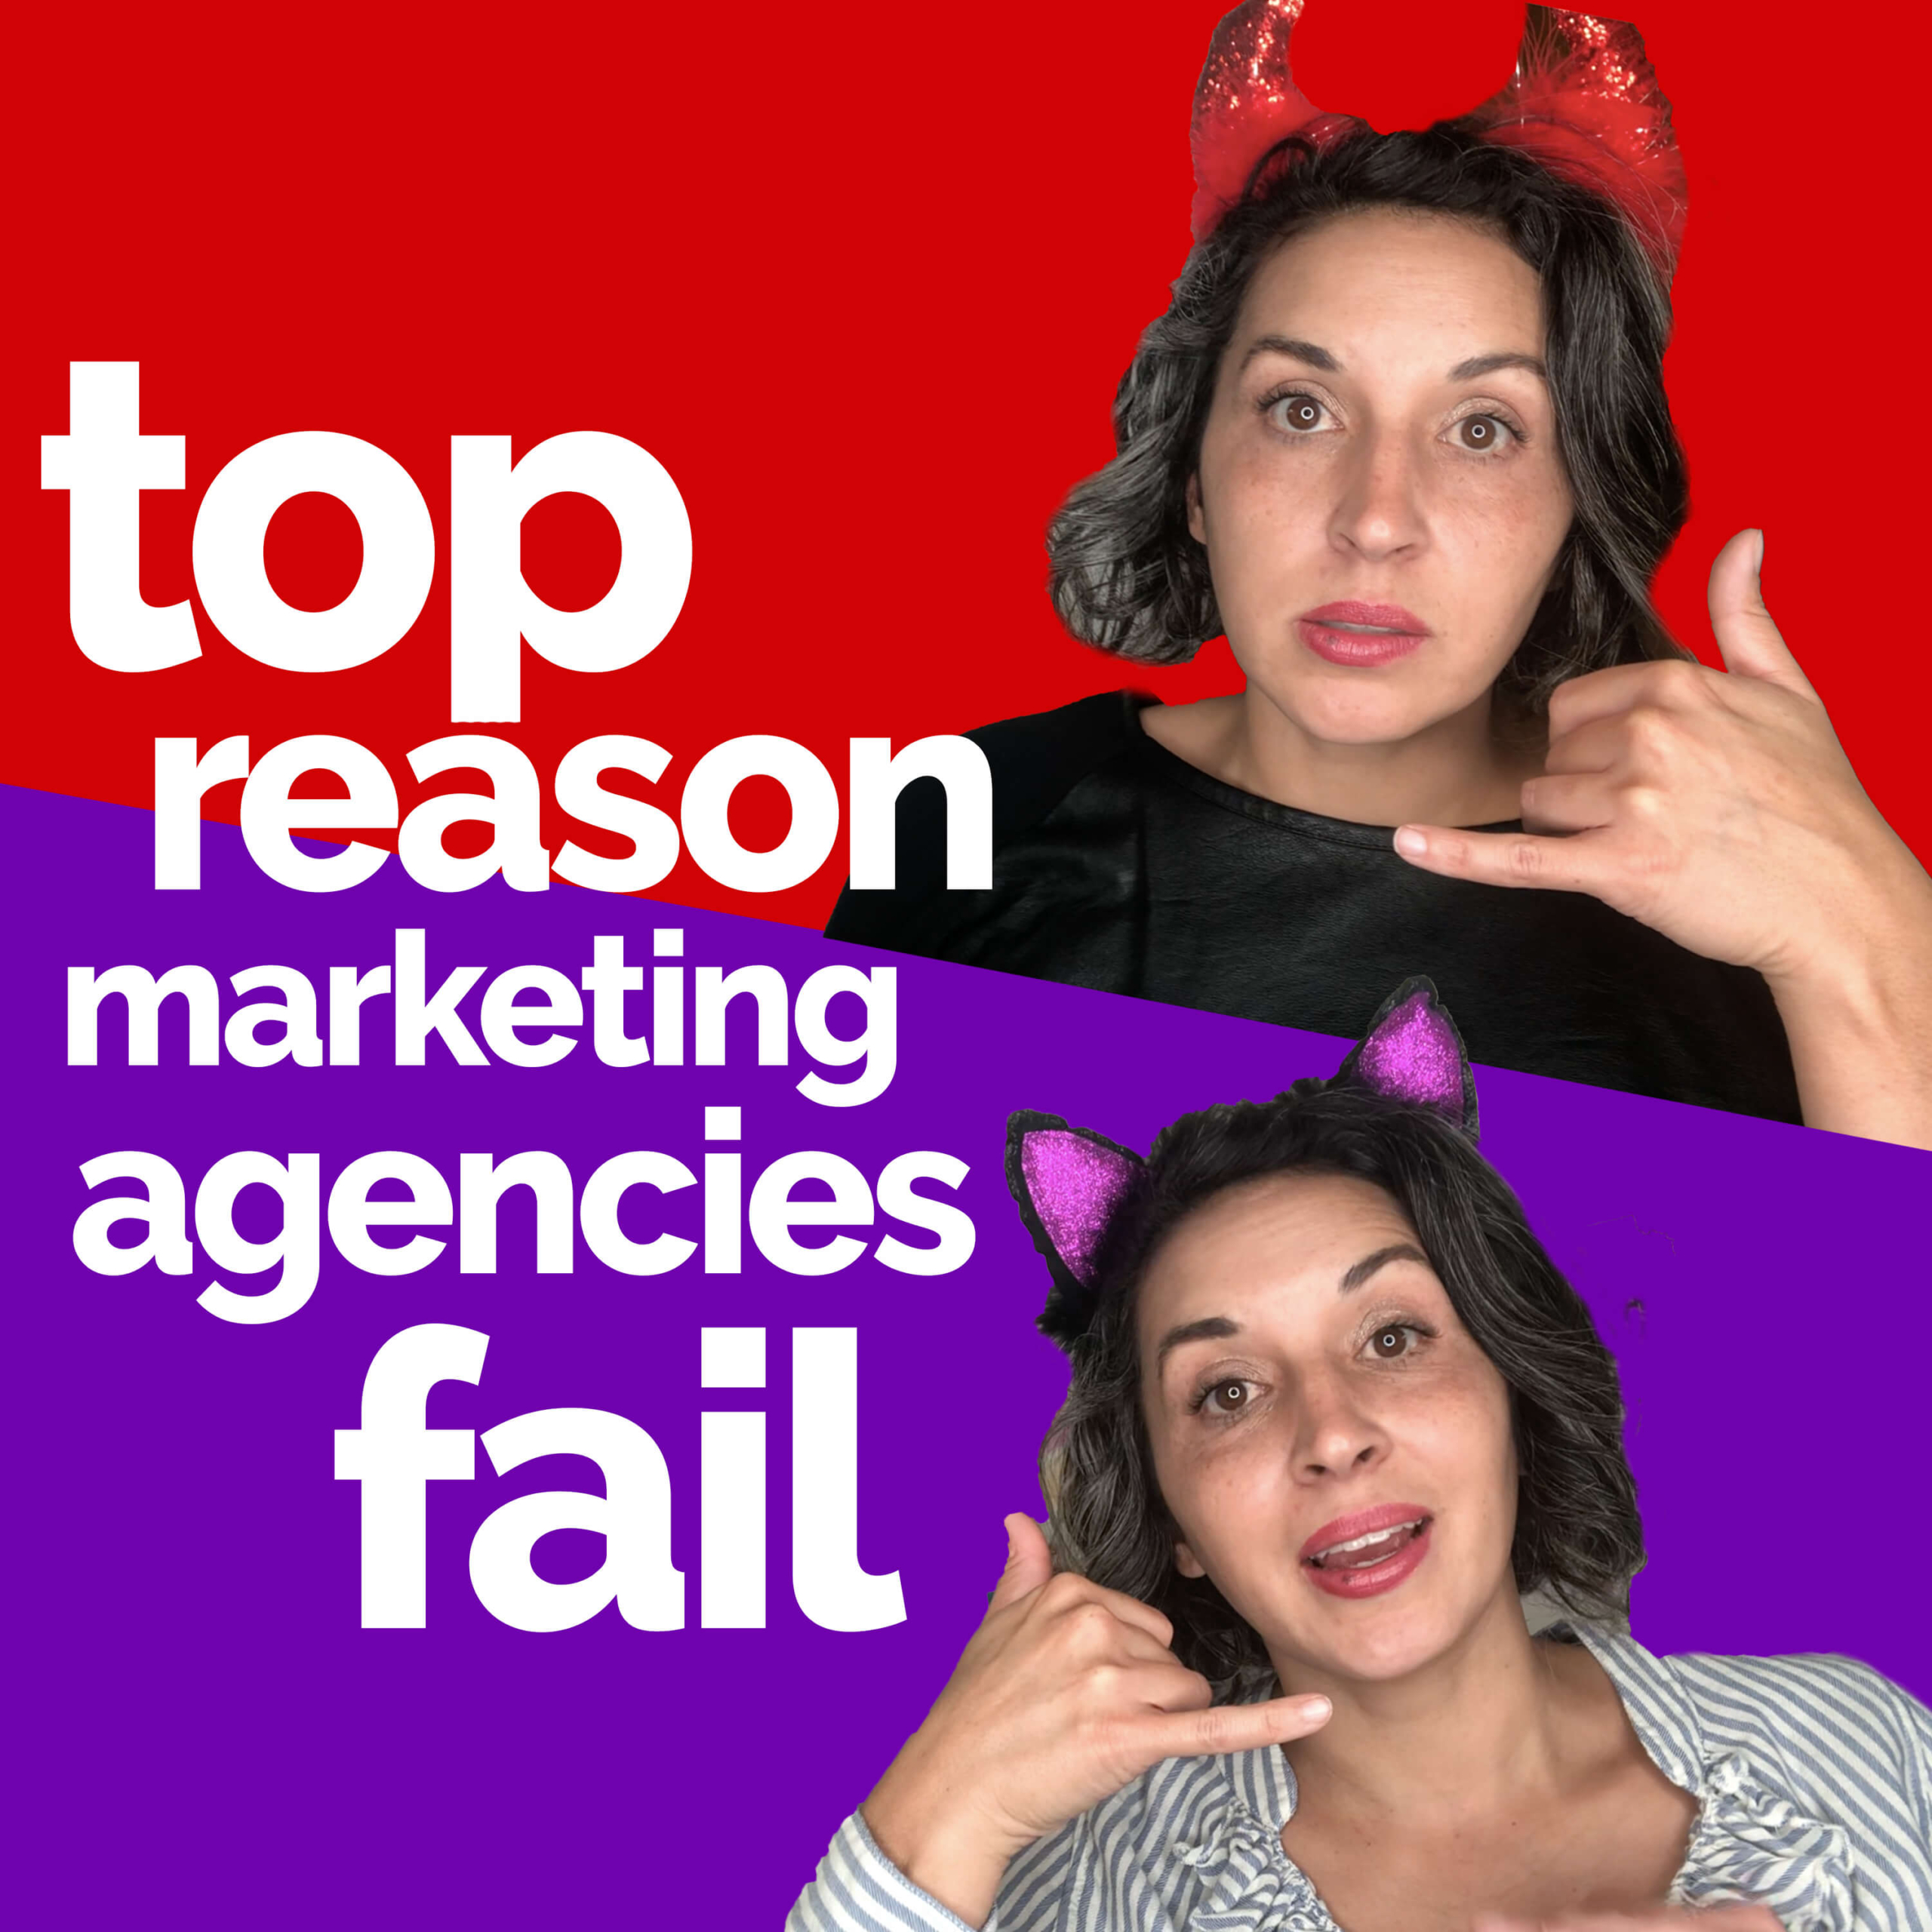 The #1 ☝️ reason why agencies fail